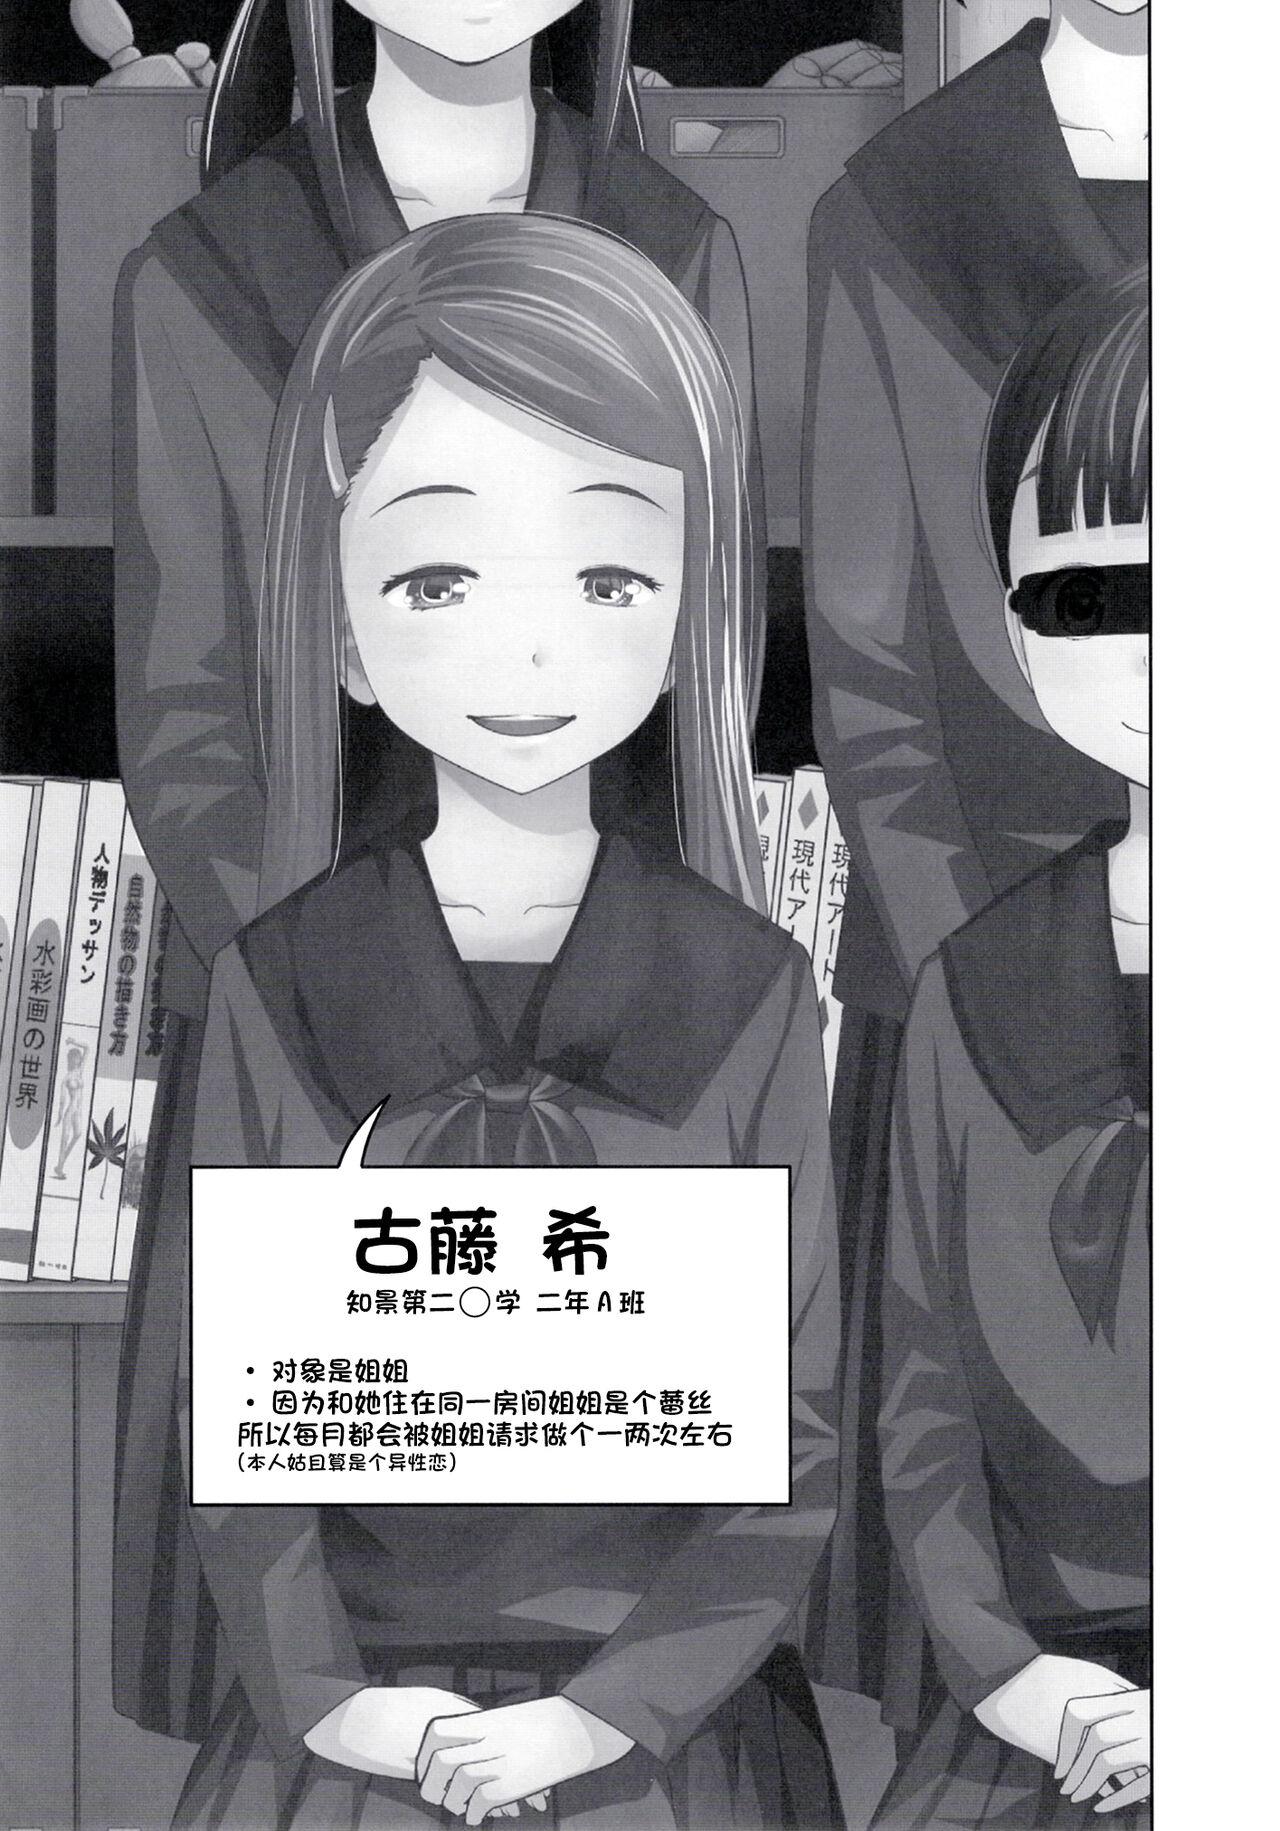 Rimjob Kono Naka ni Kinshin Soukan Shiteiru Musume ga 3-nin Imasu #4 | 这些女孩当中正在近亲相奸的有3人 #4 - Original Penis - Page 11